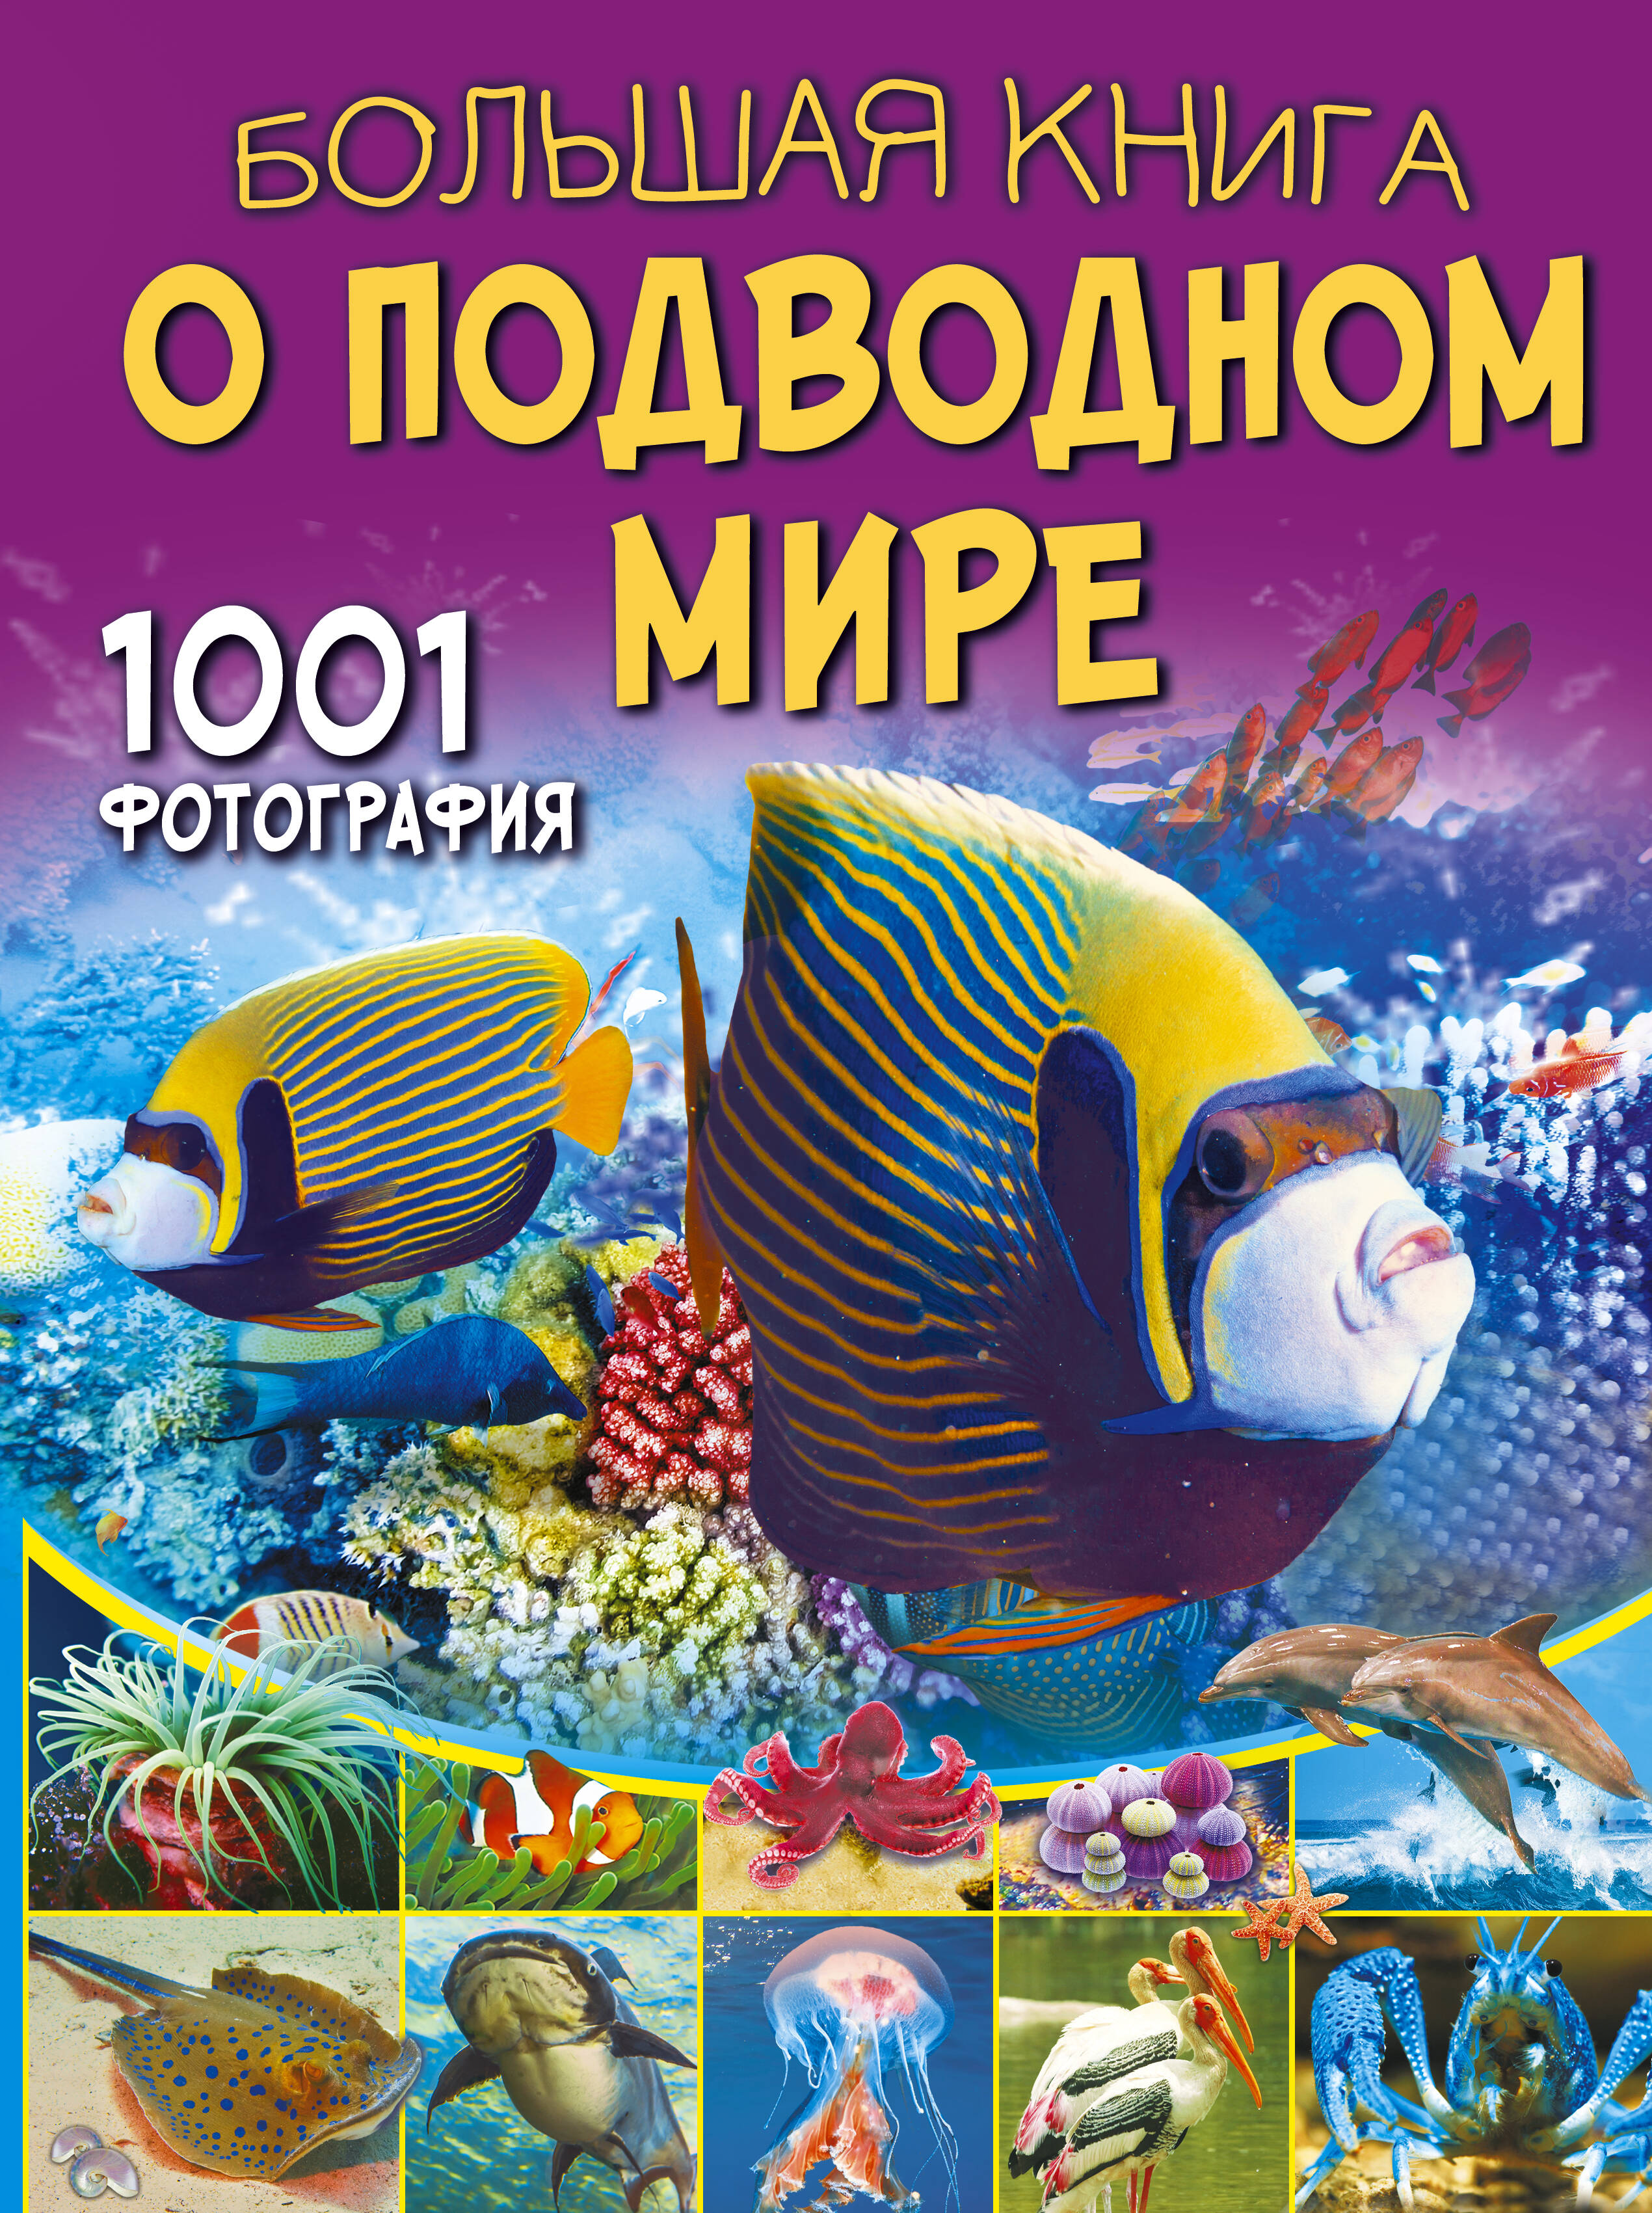 Большая книга о подводном мире. 1001 фотография 1001 фотография большая книга о растениях резько и в